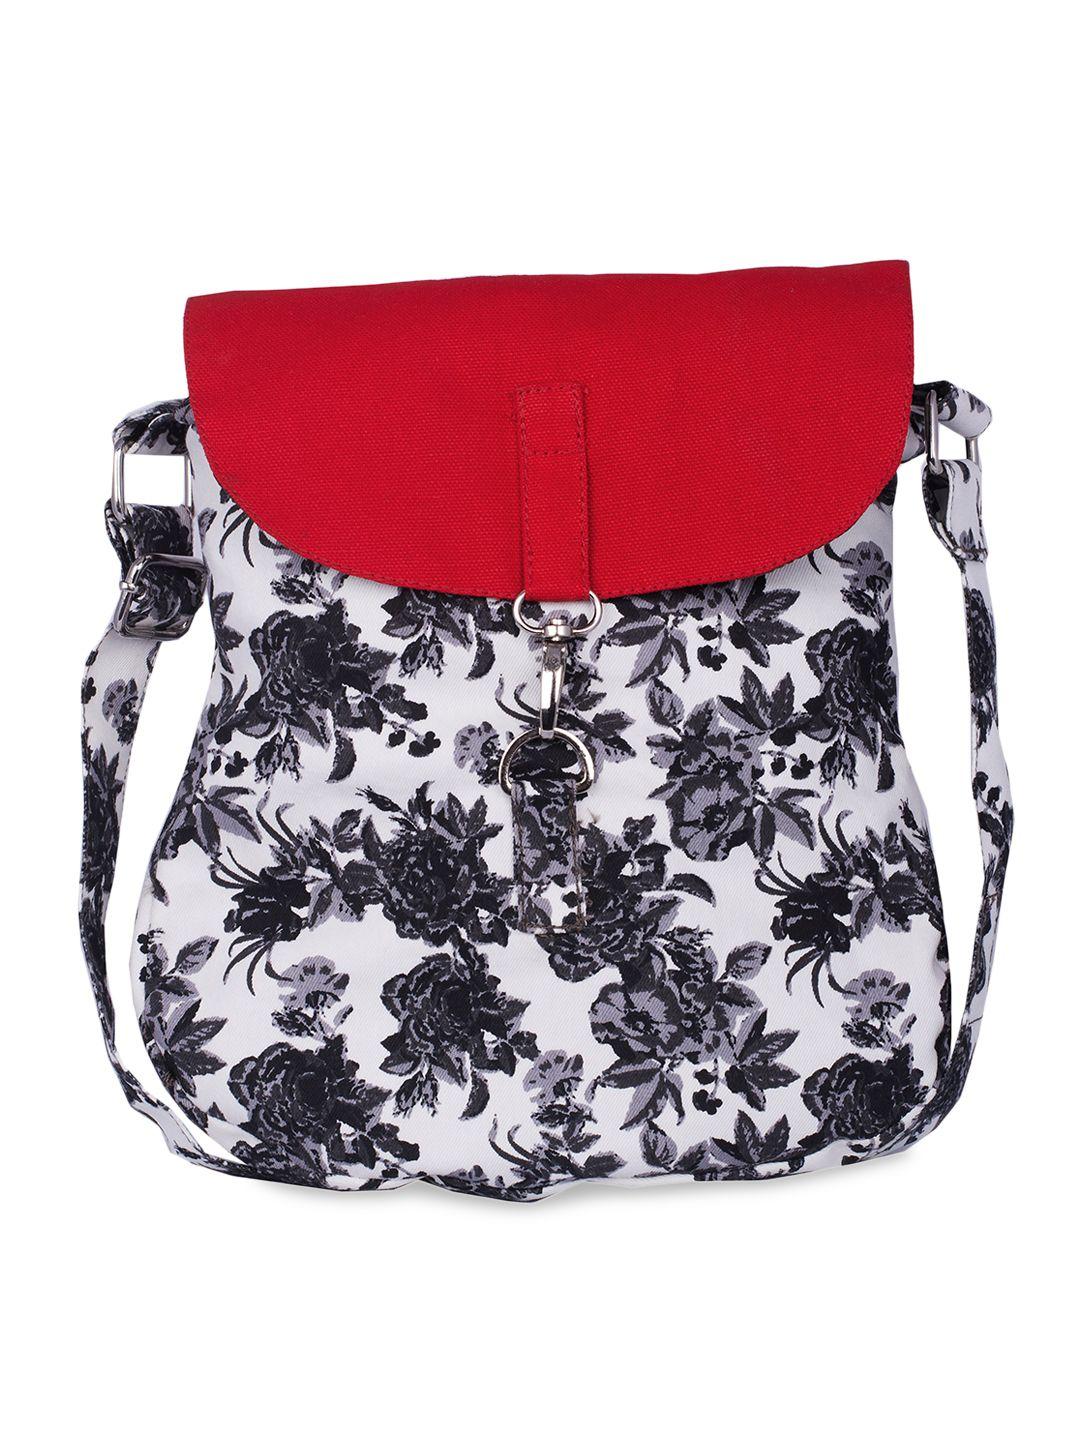 vivinkaa red & white printed sling bag